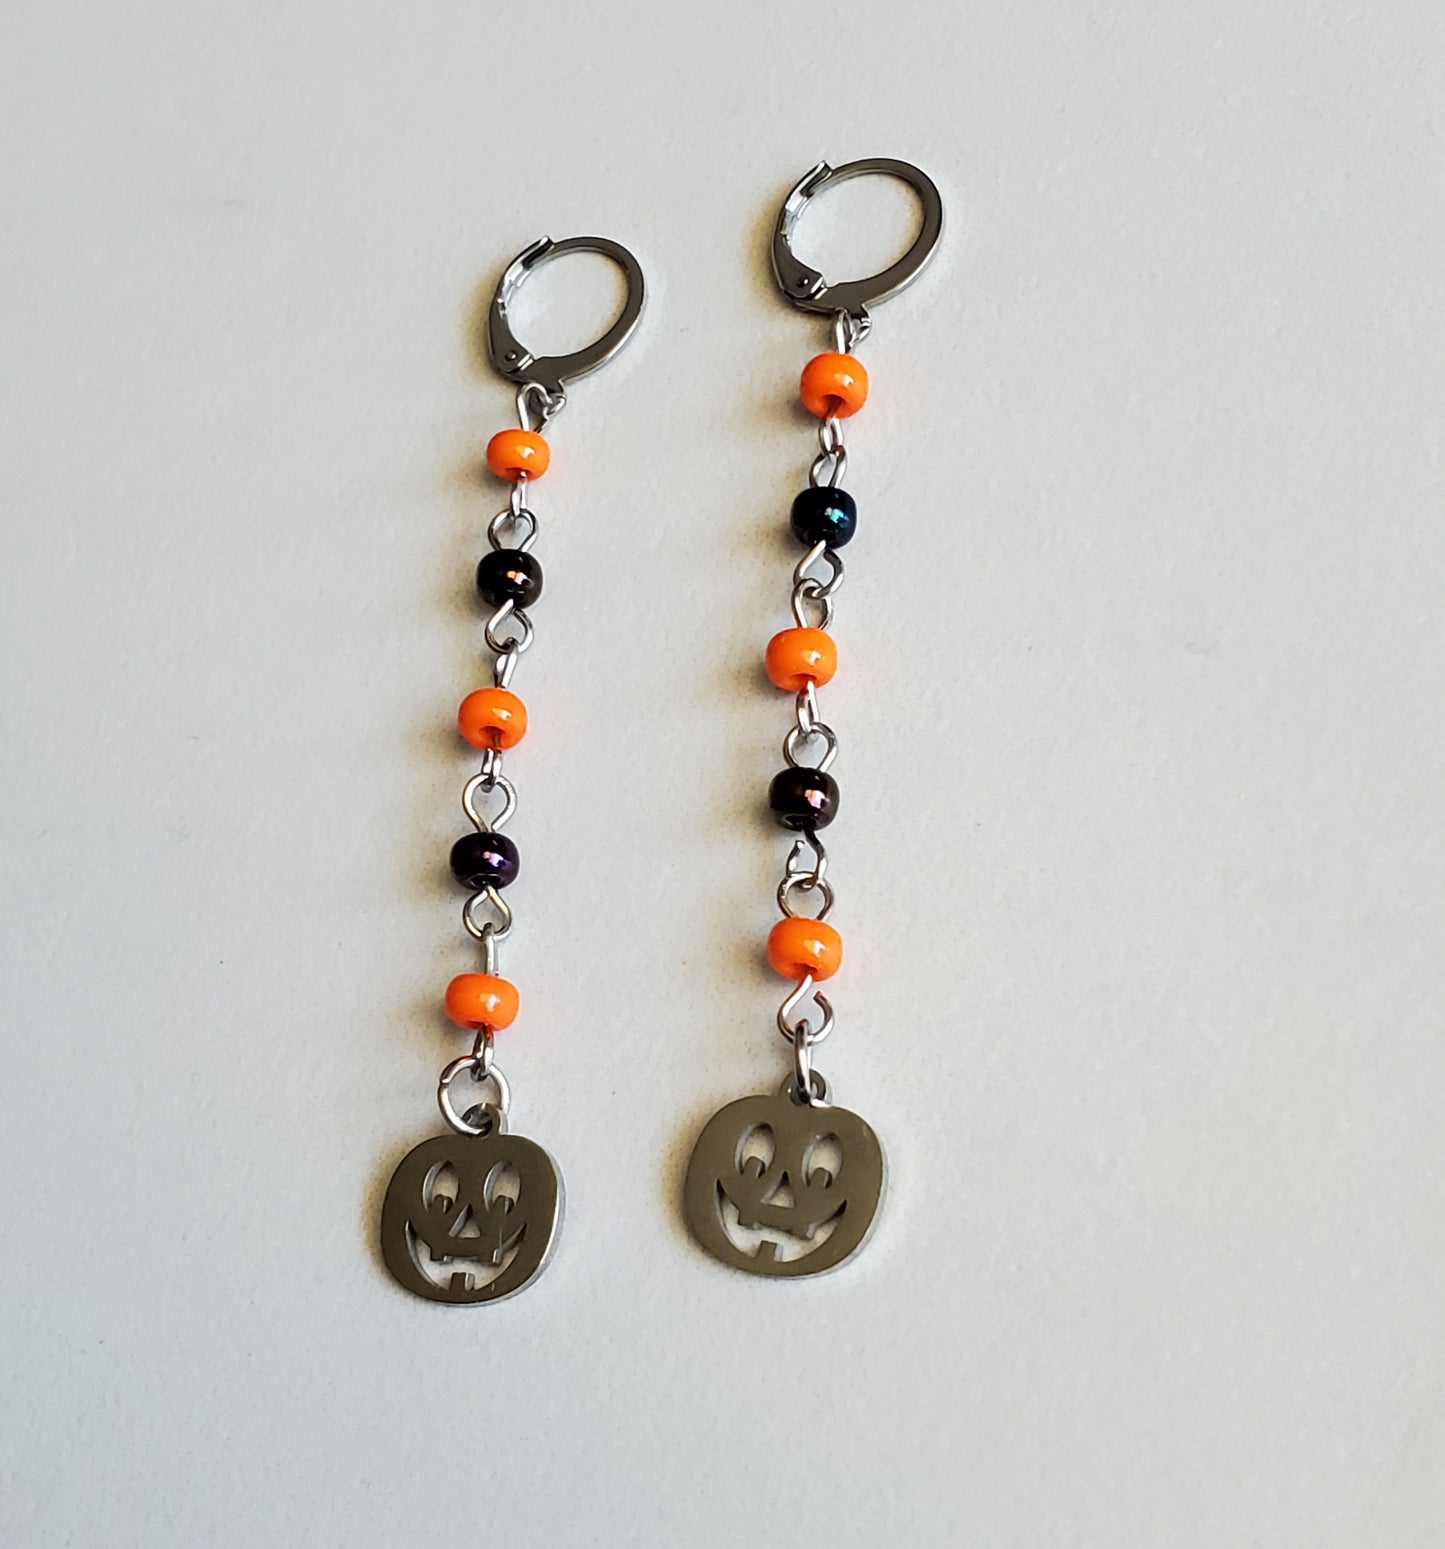 Little Pumpkin Earrings